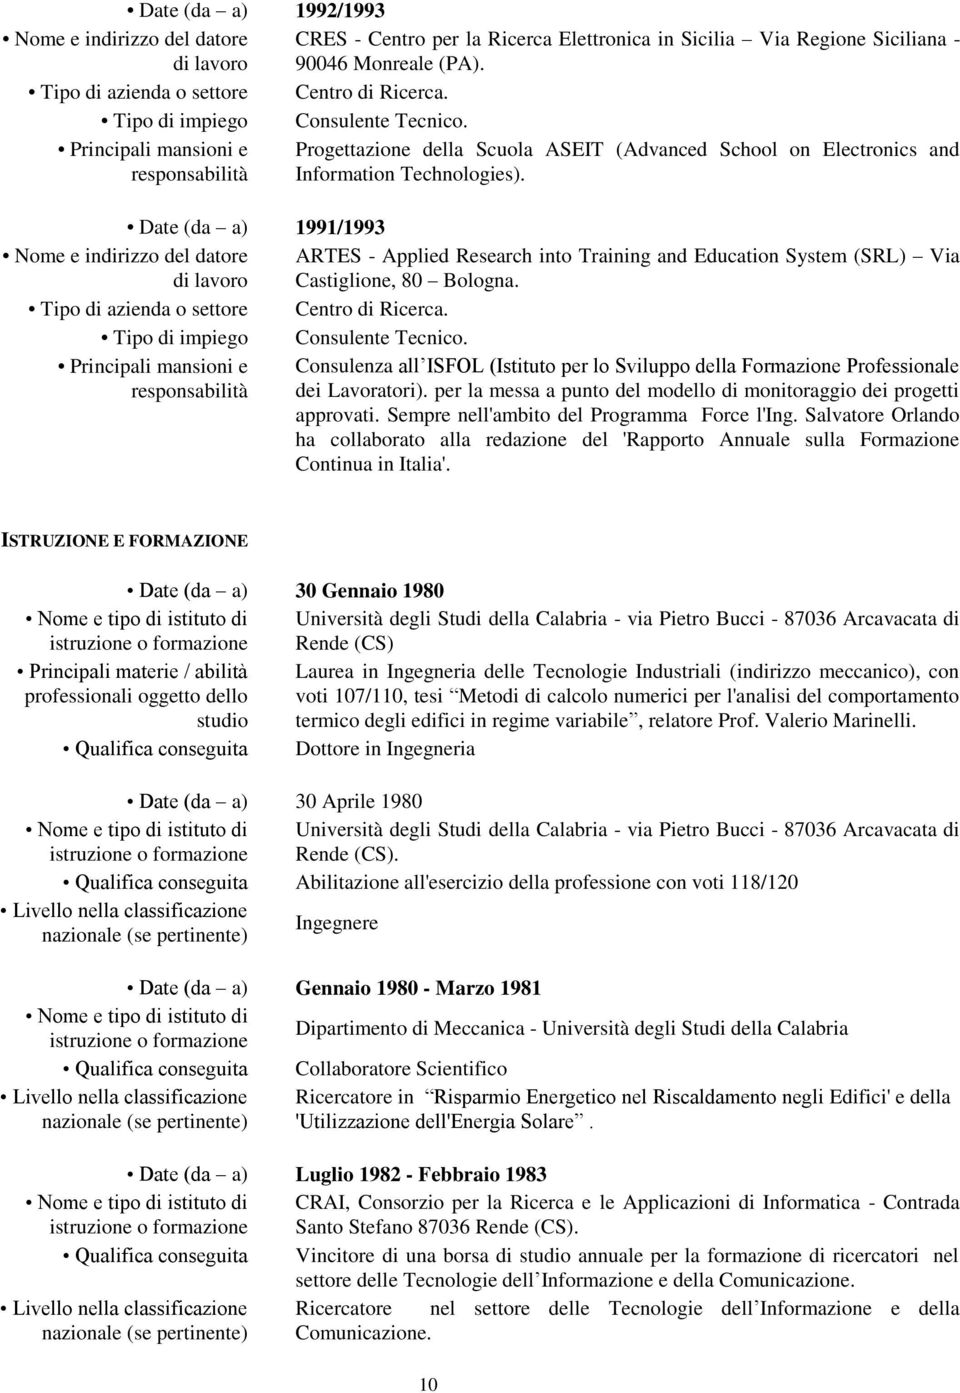 Date (da a) 1991/1993 ARTES - Applied Research into Training and Education System (SRL) Via Castiglione, 80 Bologna. Tipo di azienda o settore Centro di Ricerca.